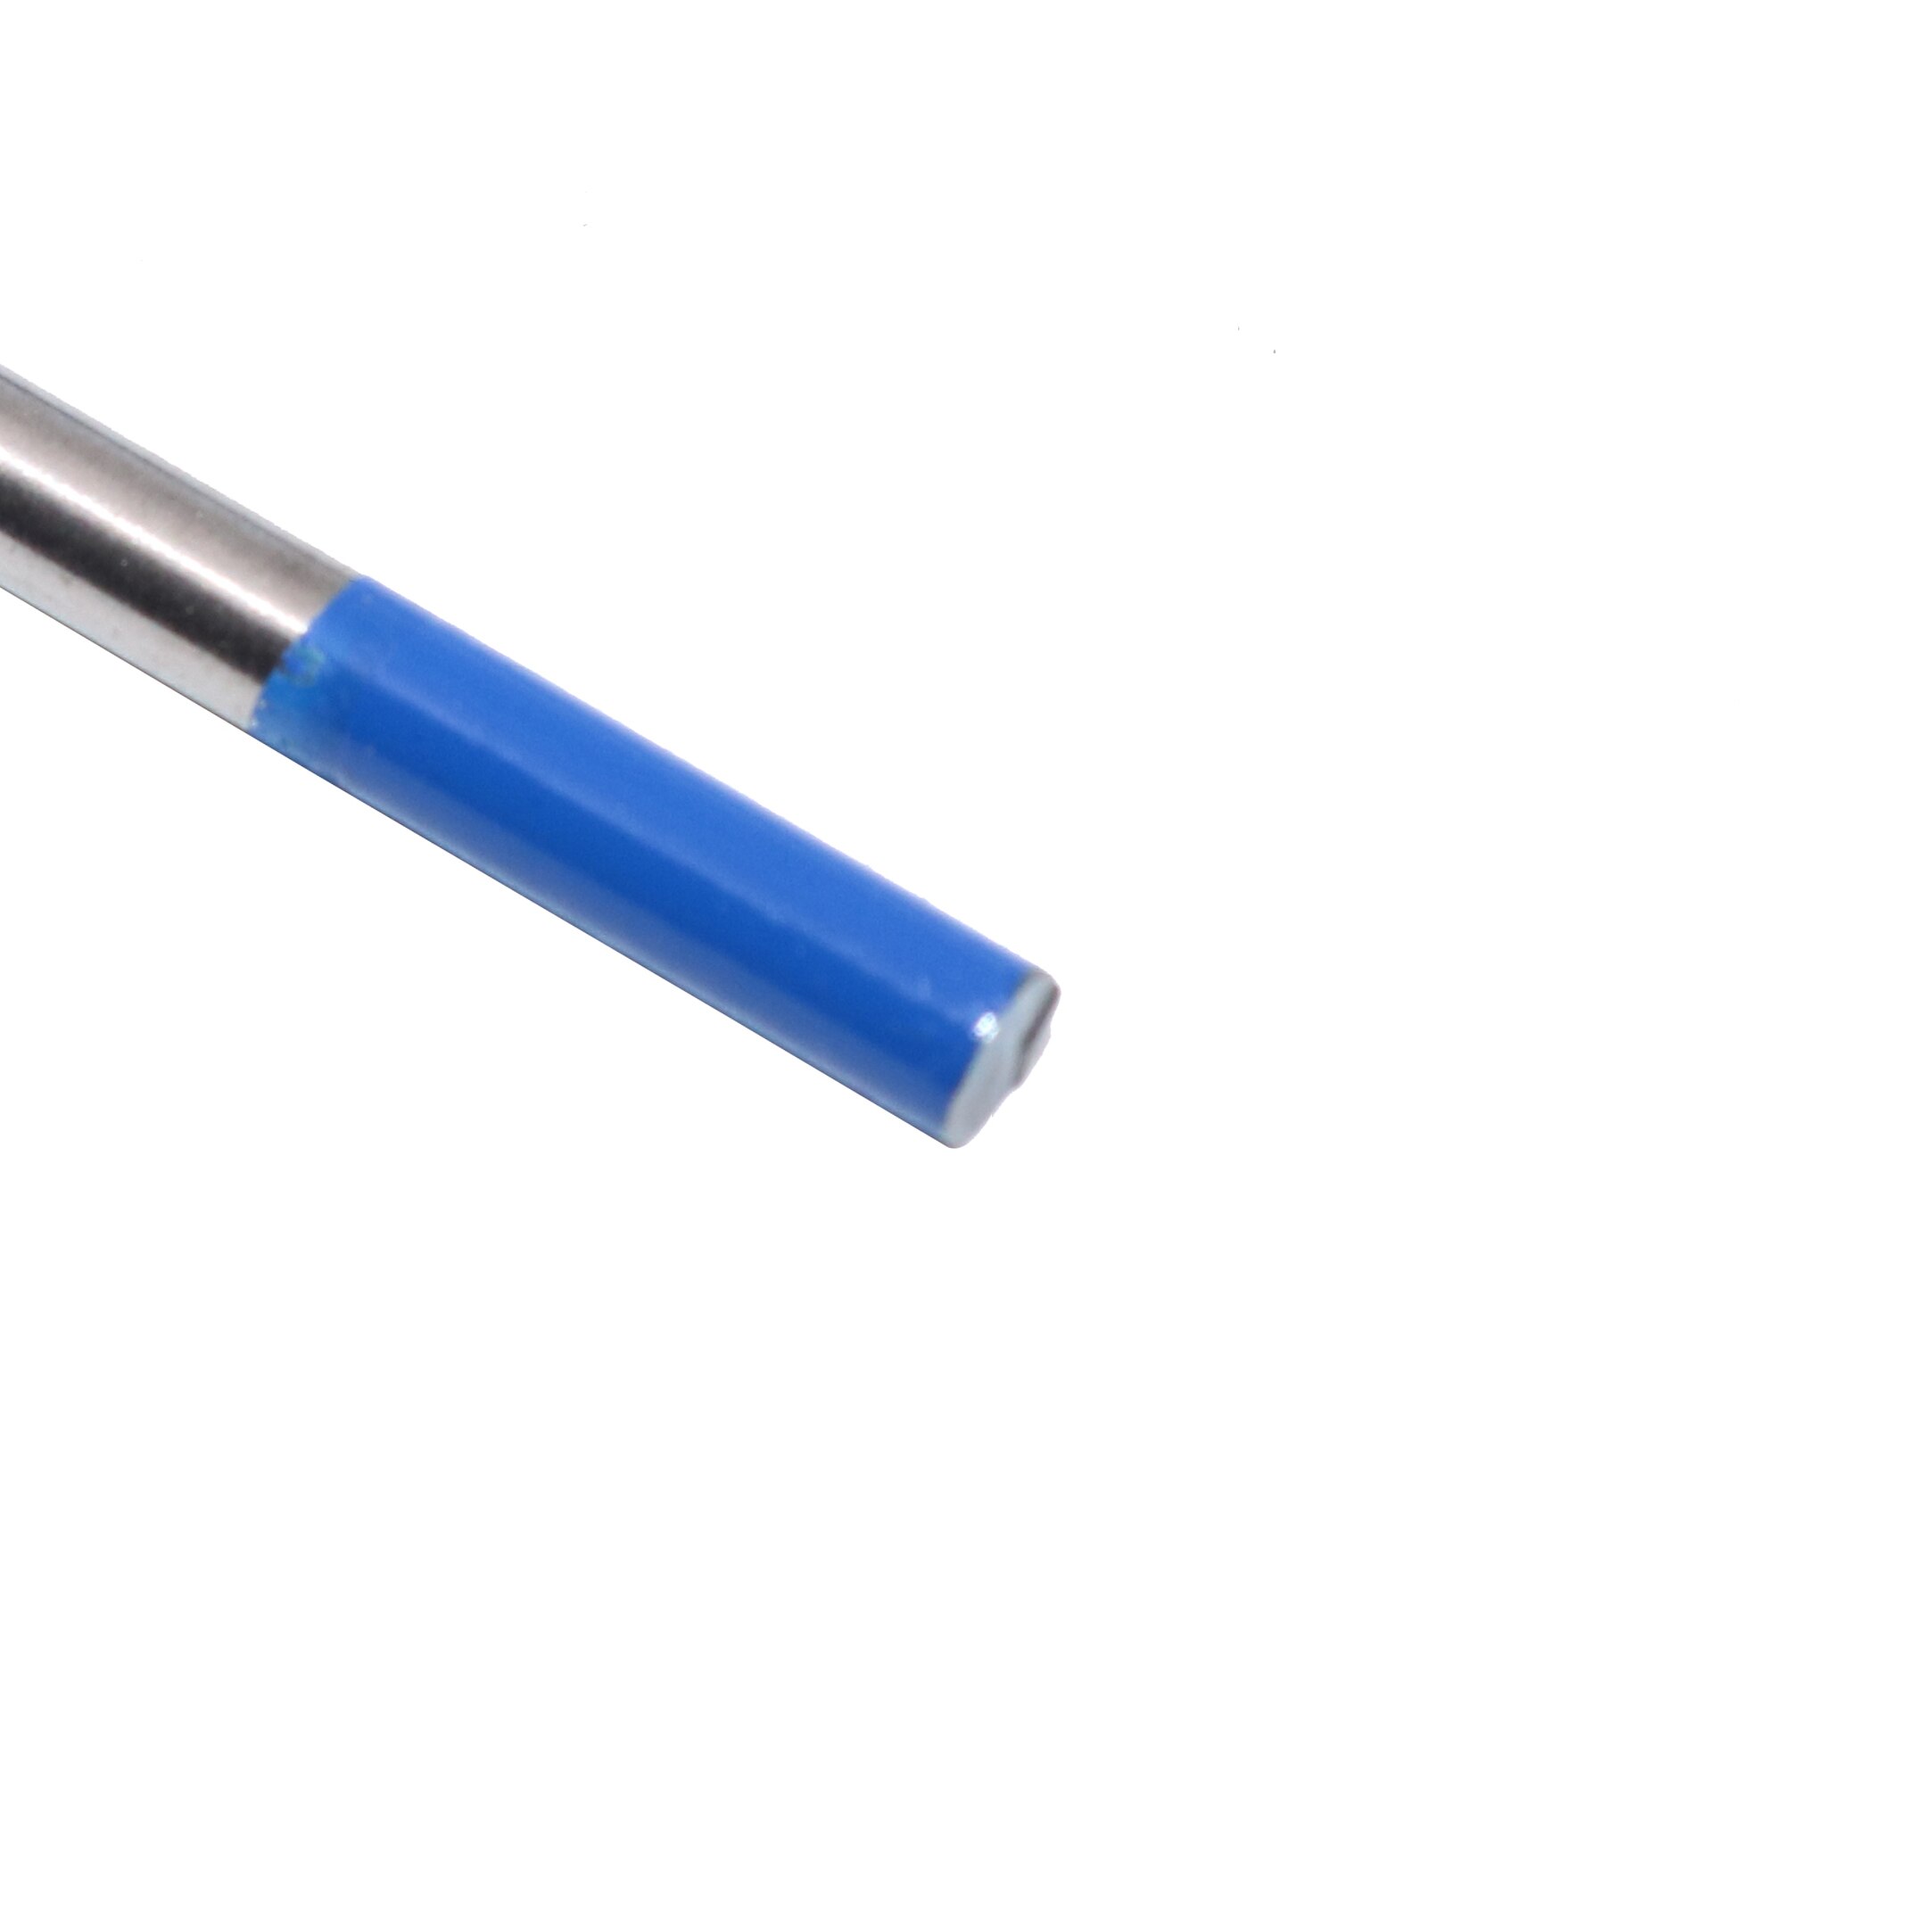 10 stk 2%  lanthaneret  wl20 tig wolframelektrode 1.0 1.6 2.0 2.4 3.0 4.0 blå metalbearbejdning